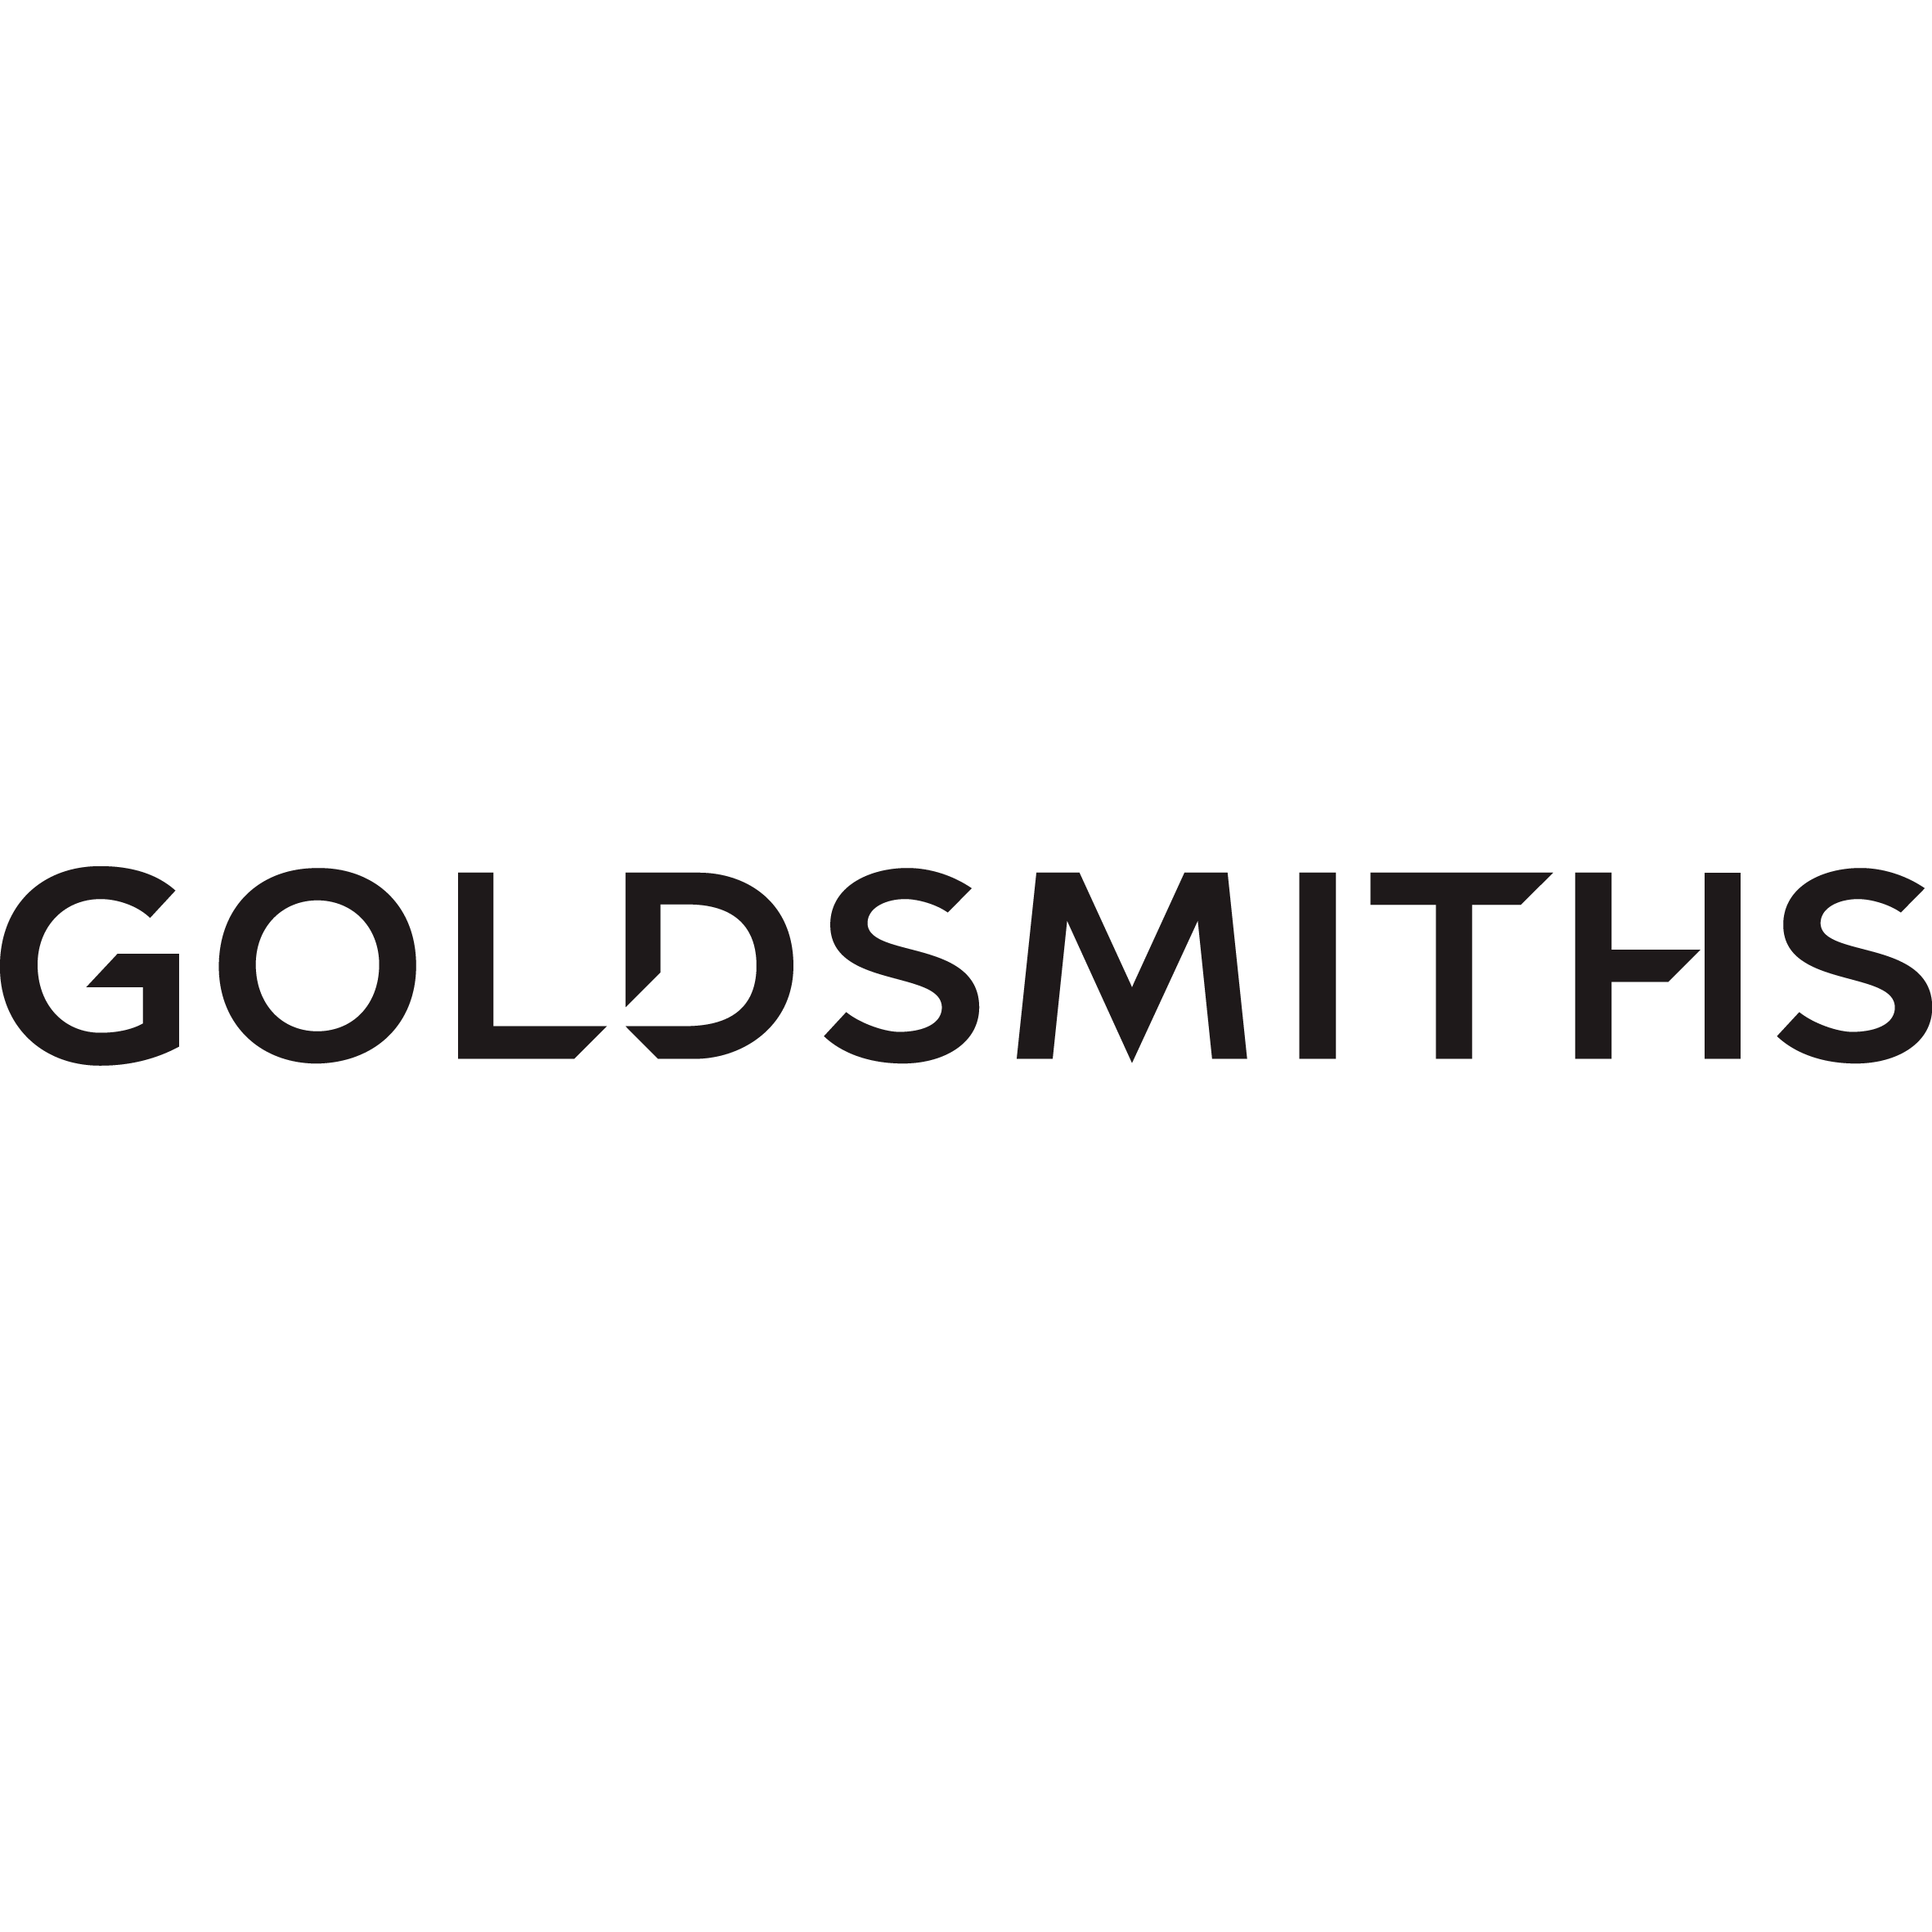 Goldsmiths - Watford, Hertfordshire WD17 2TN - 01923 227299 | ShowMeLocal.com